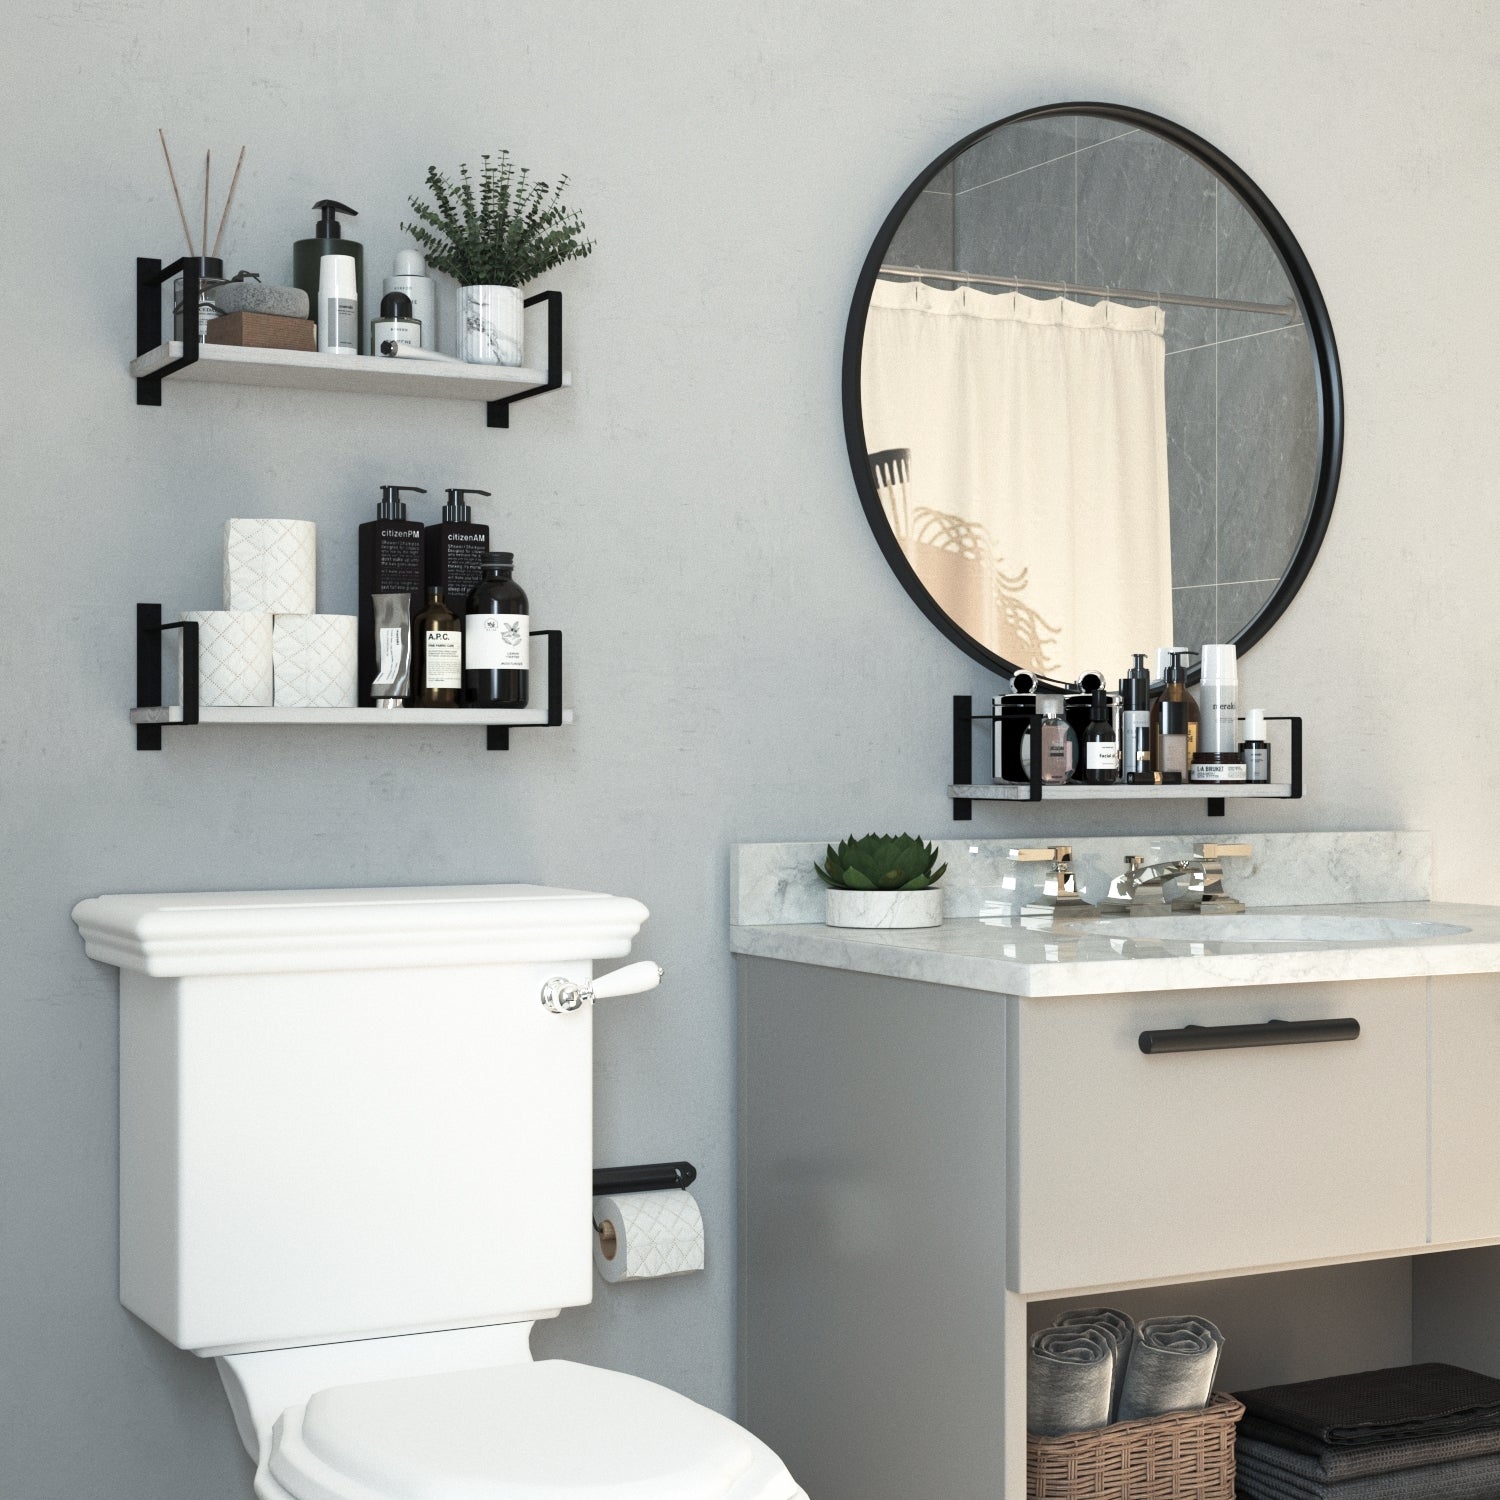 PONZA 17 Rustic Bathroom Shelf for Bathroom Decor, Wall Bathroom Organizer  – Set of 2, or 3 - Burnt with White Brackets